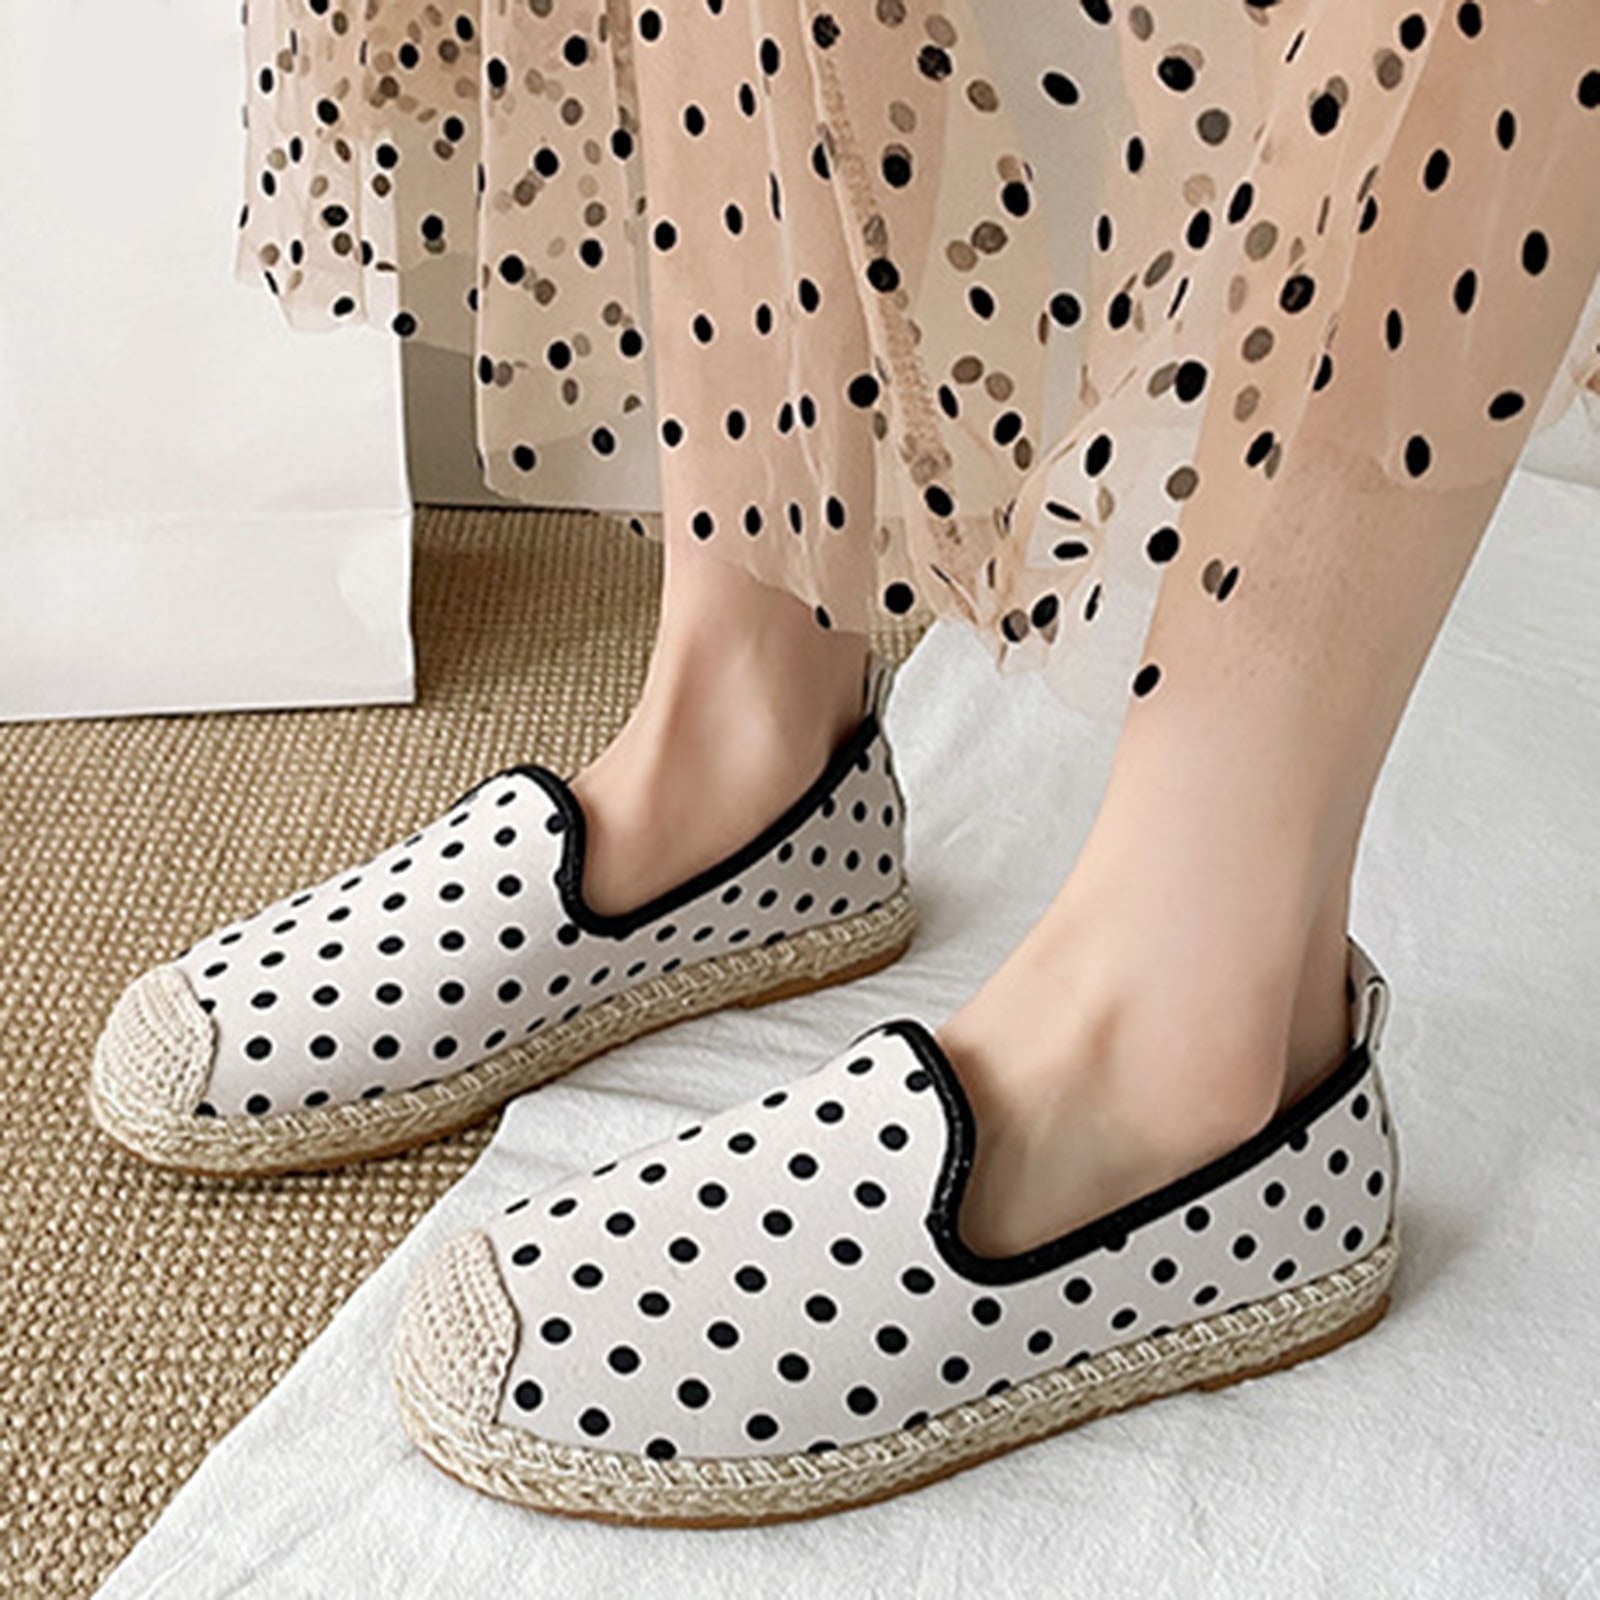  Women's Flat Shoes Fashion Mesh Polka Dot Shoes Casual